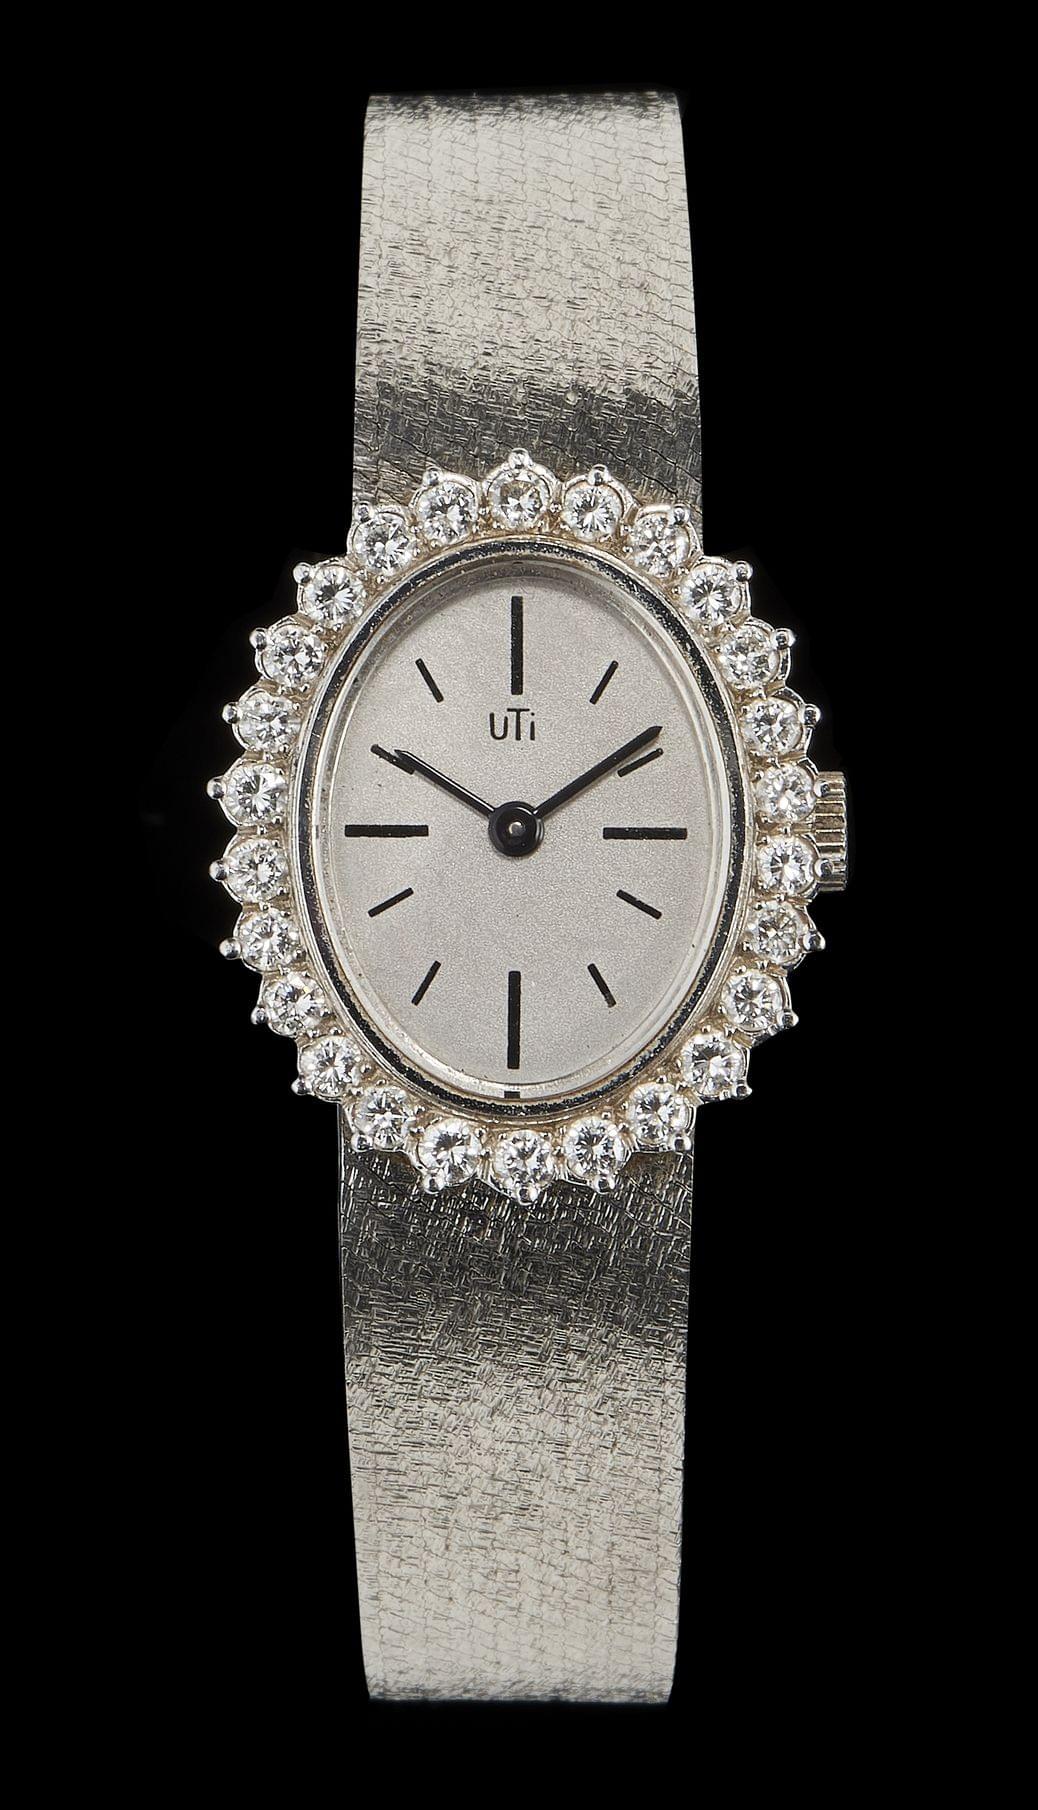 Uti, montre-bracelet ovale mécanique sertie de diamants